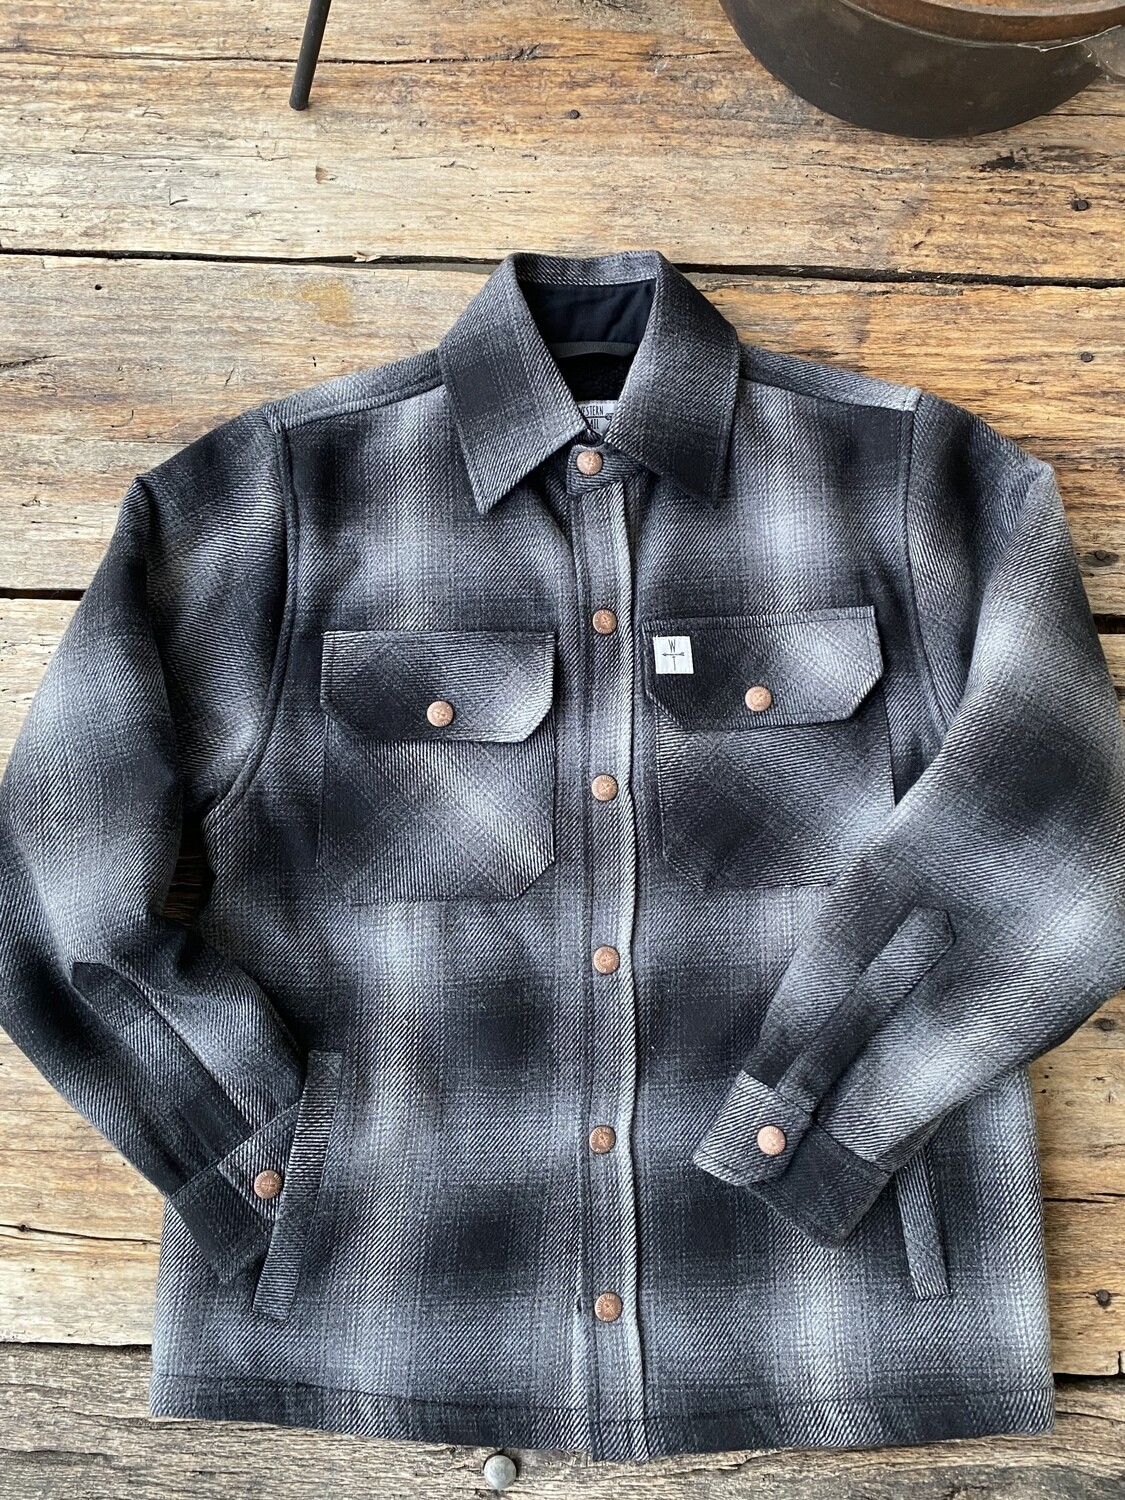 Ontario Wool Grey/Black